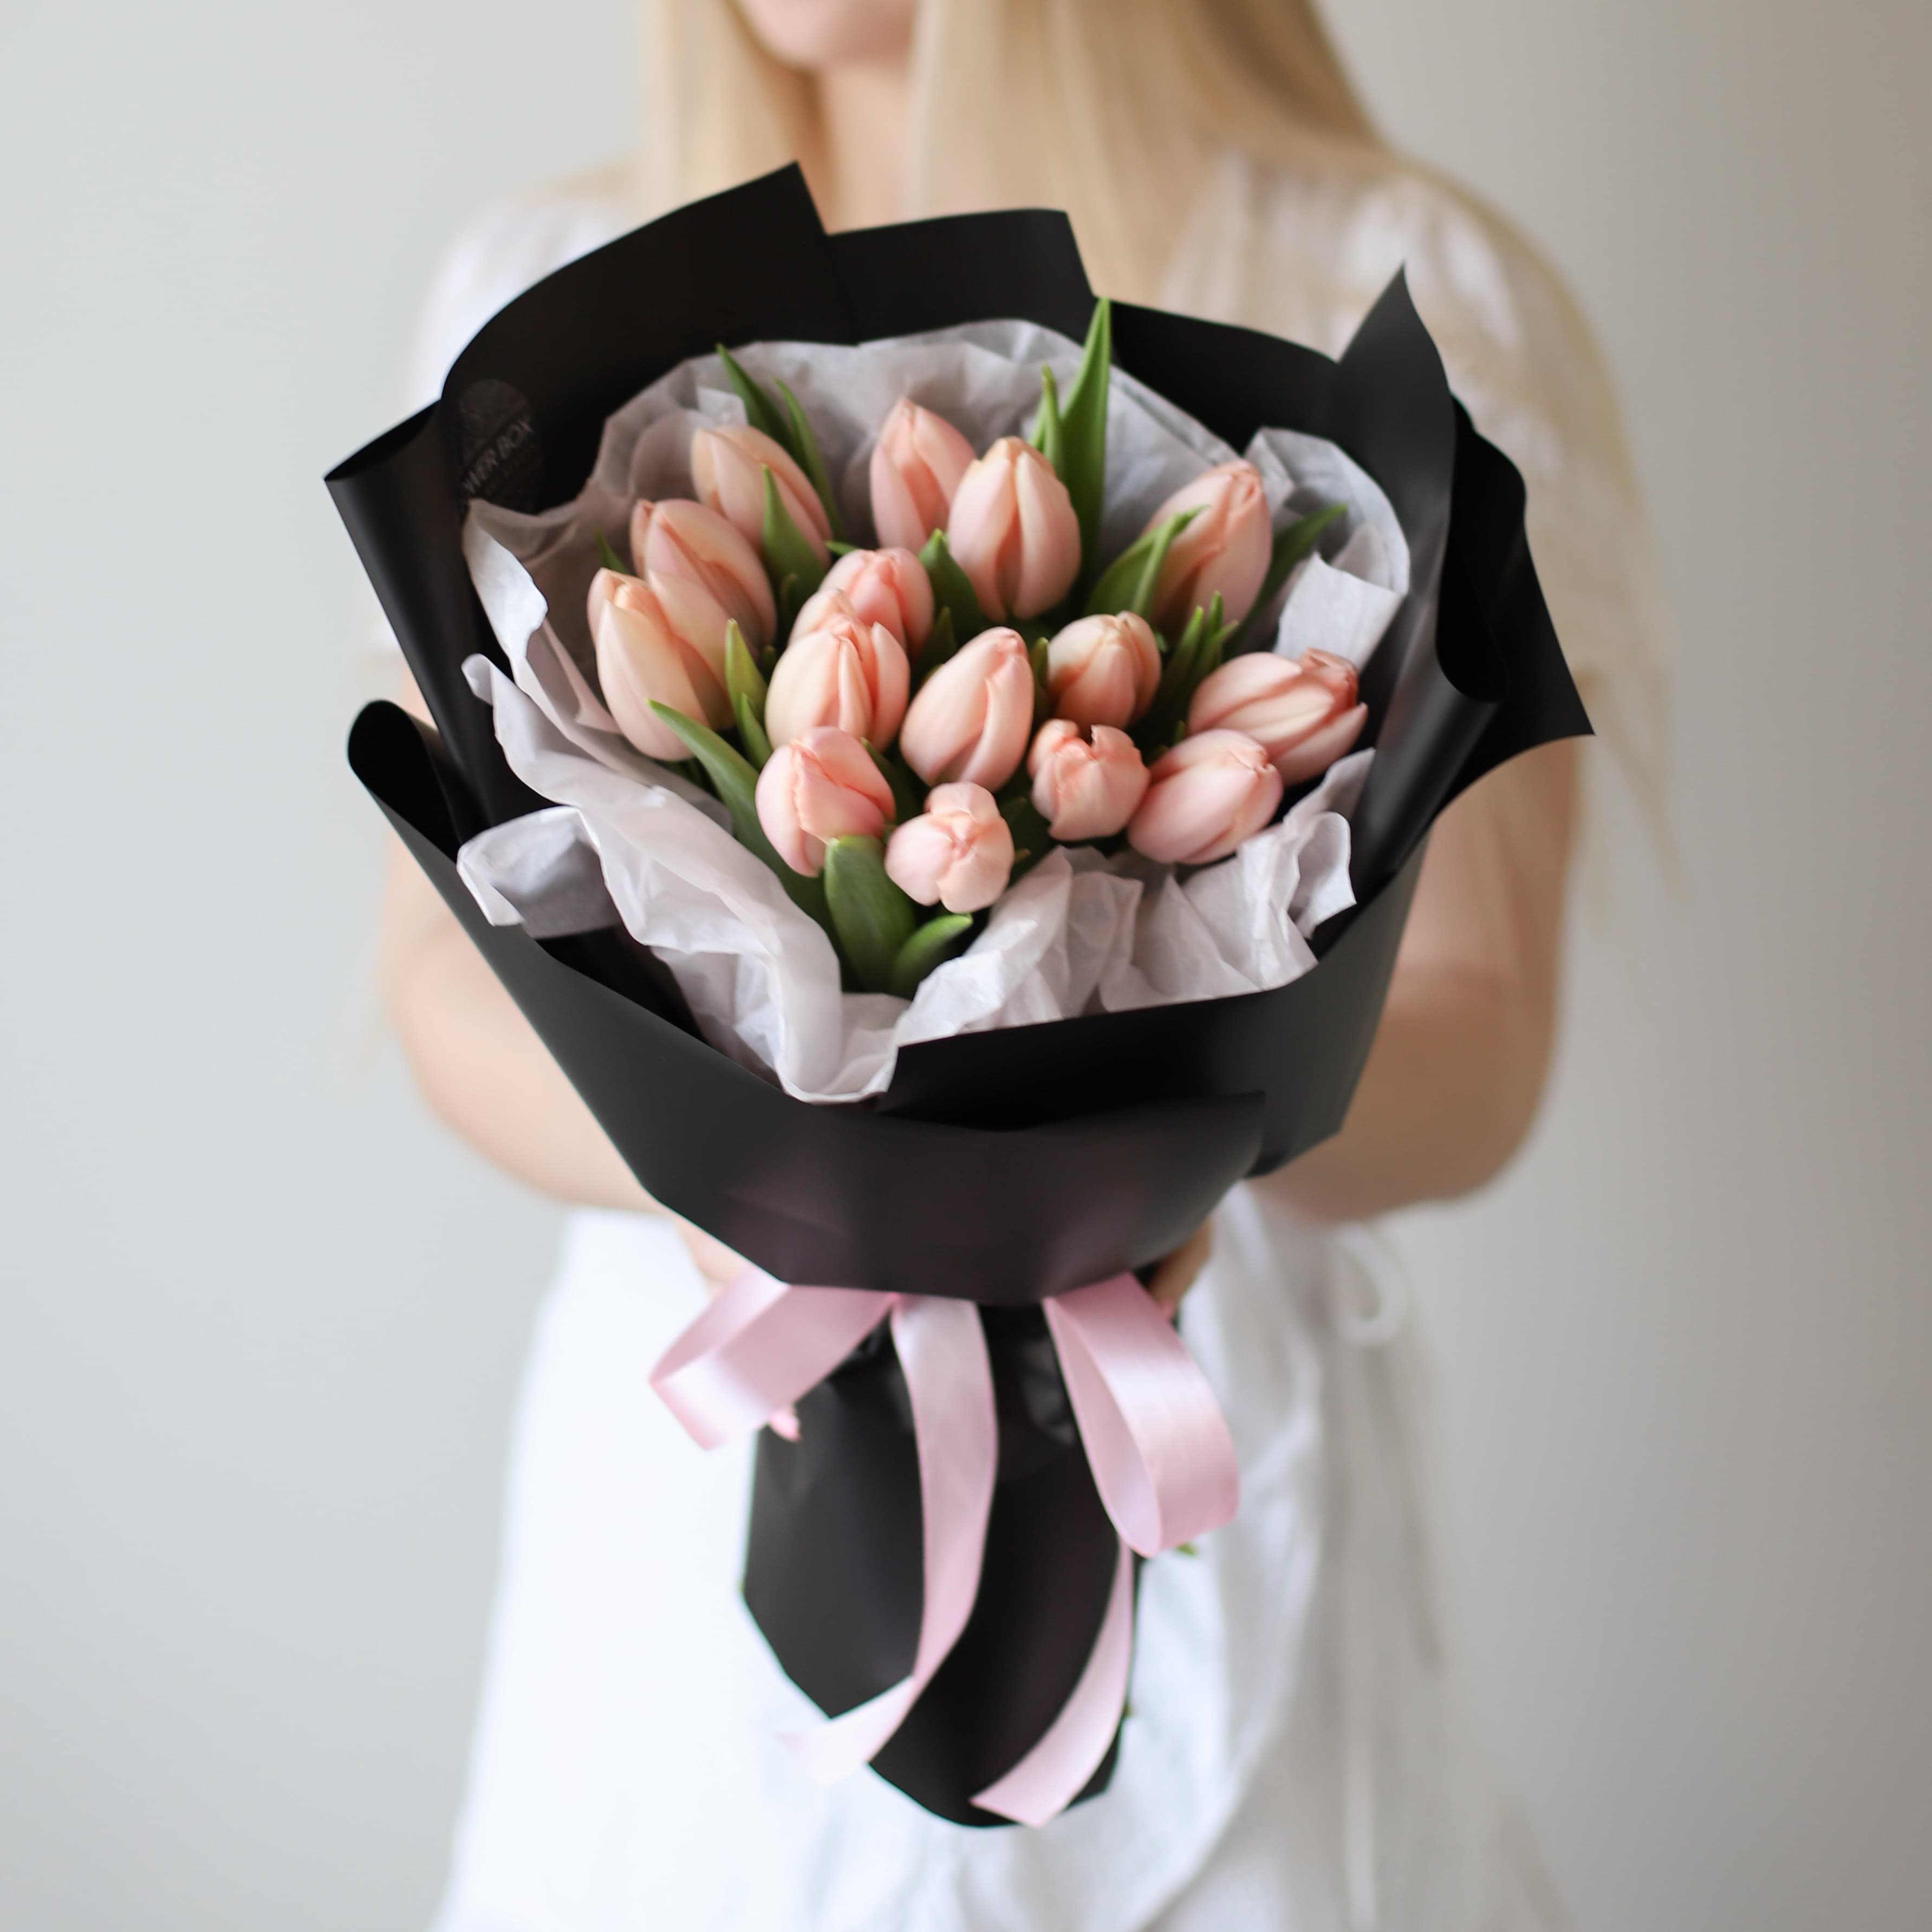 Лососевые тюльпаны голландские в черном оформлении (15 шт) №1593 - Фото 1